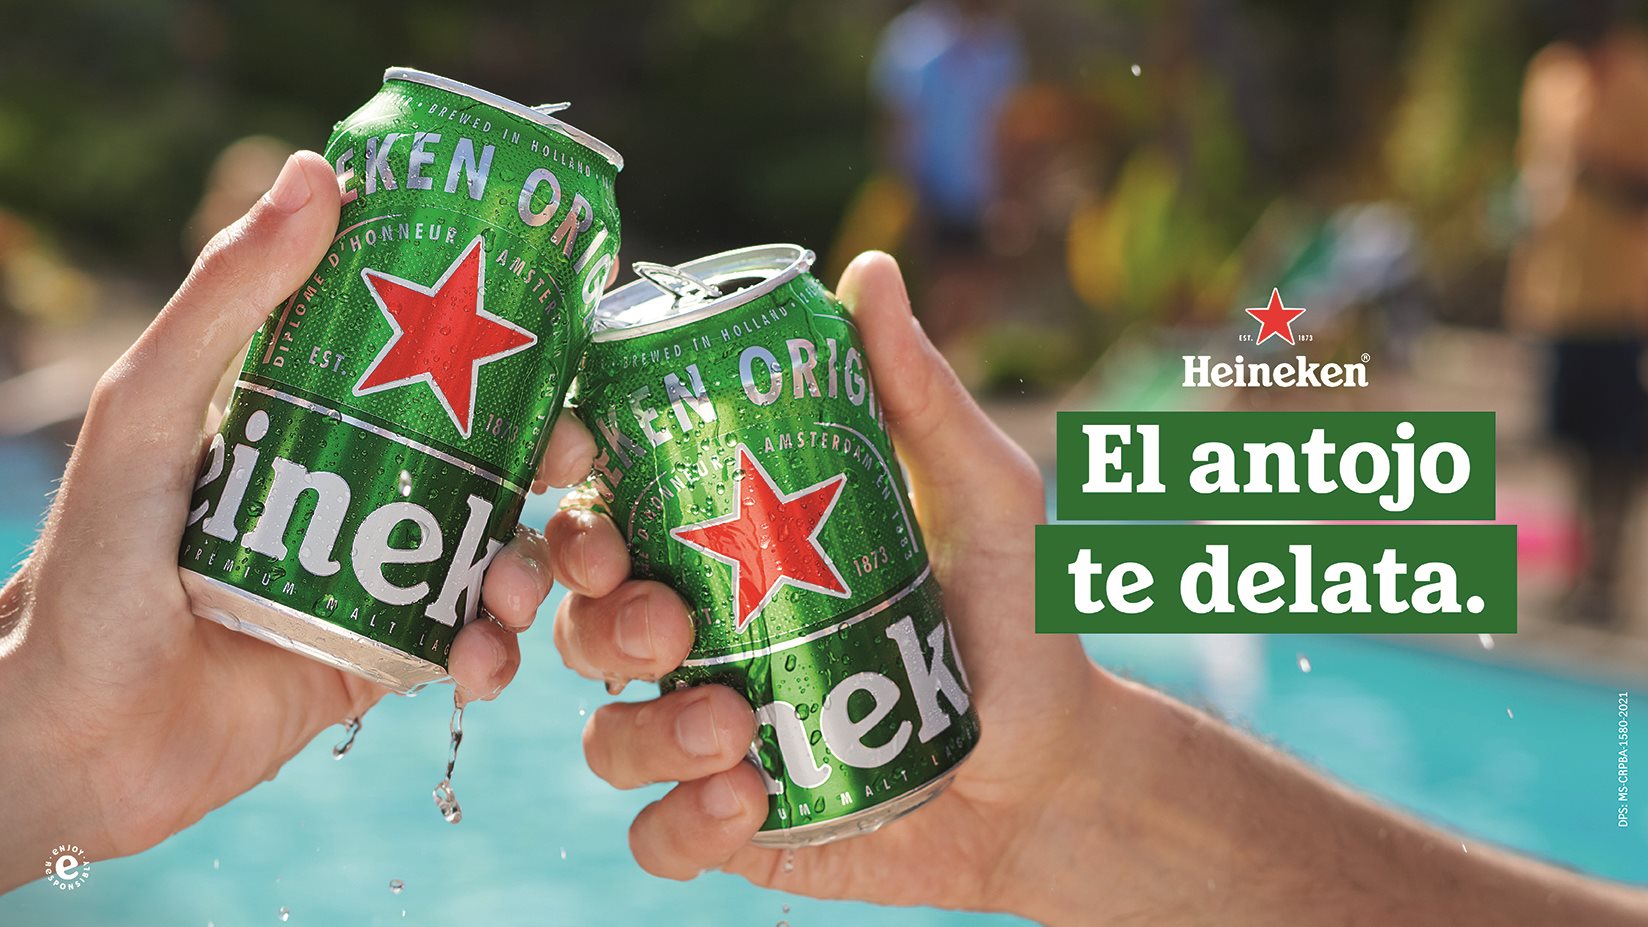 Heineken Verano Lata Banner